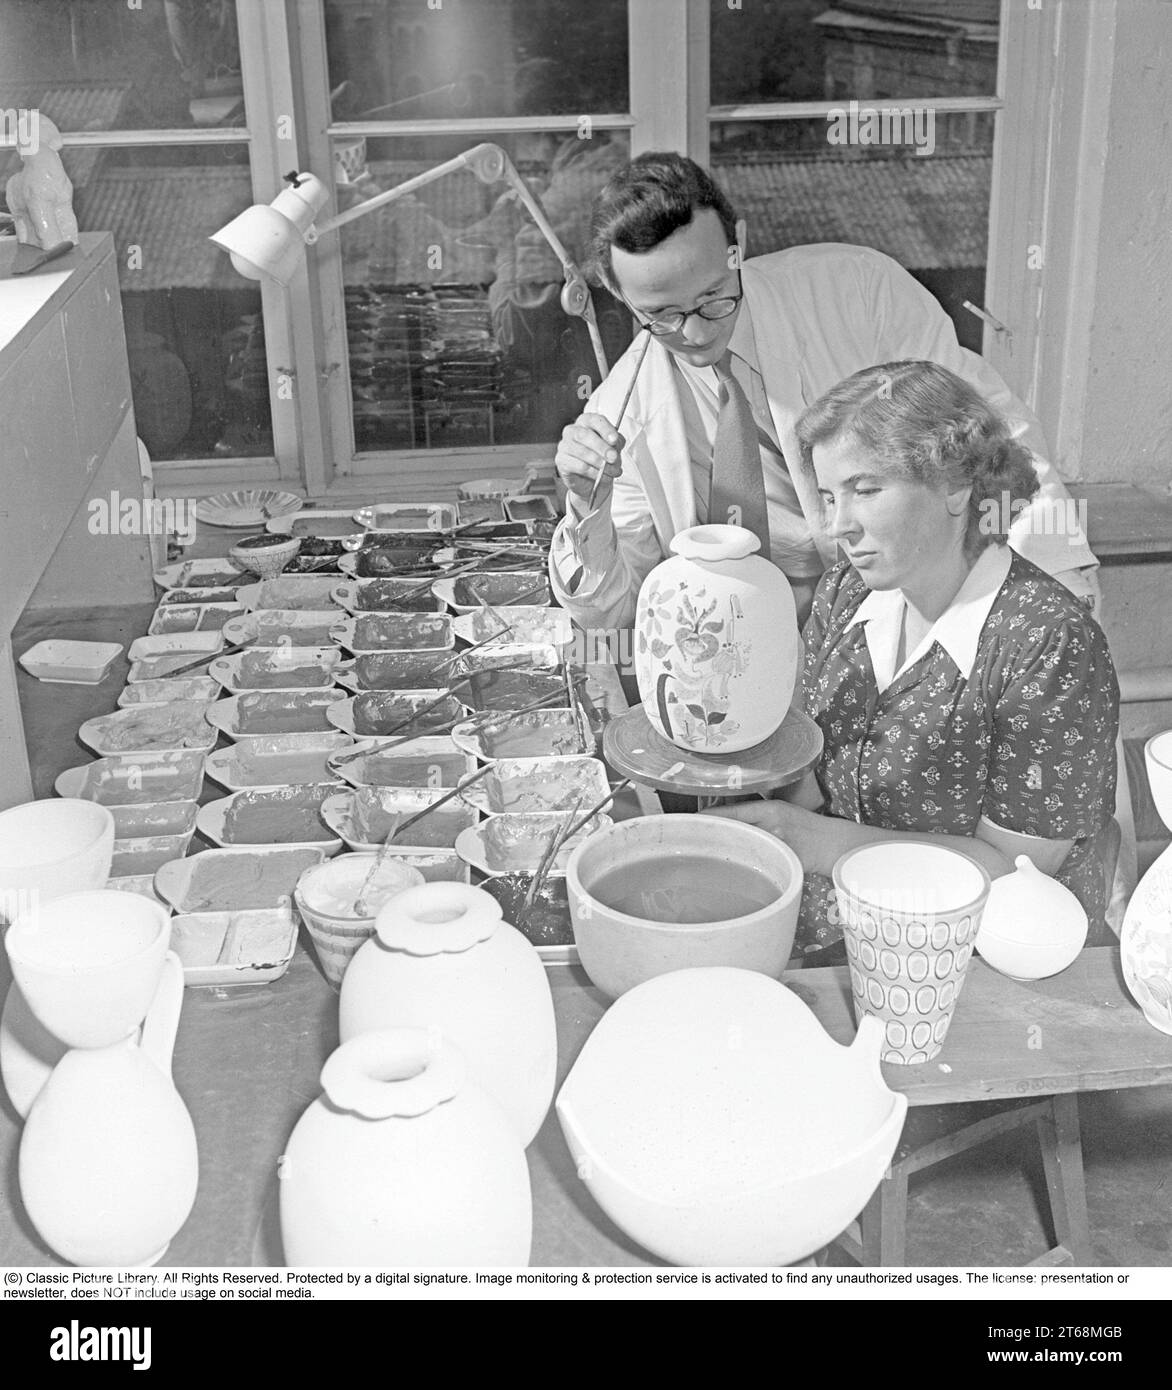 Stig Lindberg (Umeå, 17 agosto 1916 – San felice Circeo, 7 aprile 1982) è stato un designer svedese di ceramica, vetro, tessile, industriale, pittore, e illustratore. Uno dei più importanti designer svedesi del dopoguerra, Lindberg creò stravaganti ceramiche da studio e graziose linee di stoviglie durante una lunga carriera nella fabbrica di ceramica Gustavsberg. Stig Lindberg ha studiato pittura presso l'University College of Arts, Crafts and Design. Nel 1937, andò a lavorare a Gustavsberg sotto Wilhelm Kåge. Nel 1949 fu nominato successore di Kåge come direttore artistico. Da questo per Foto Stock